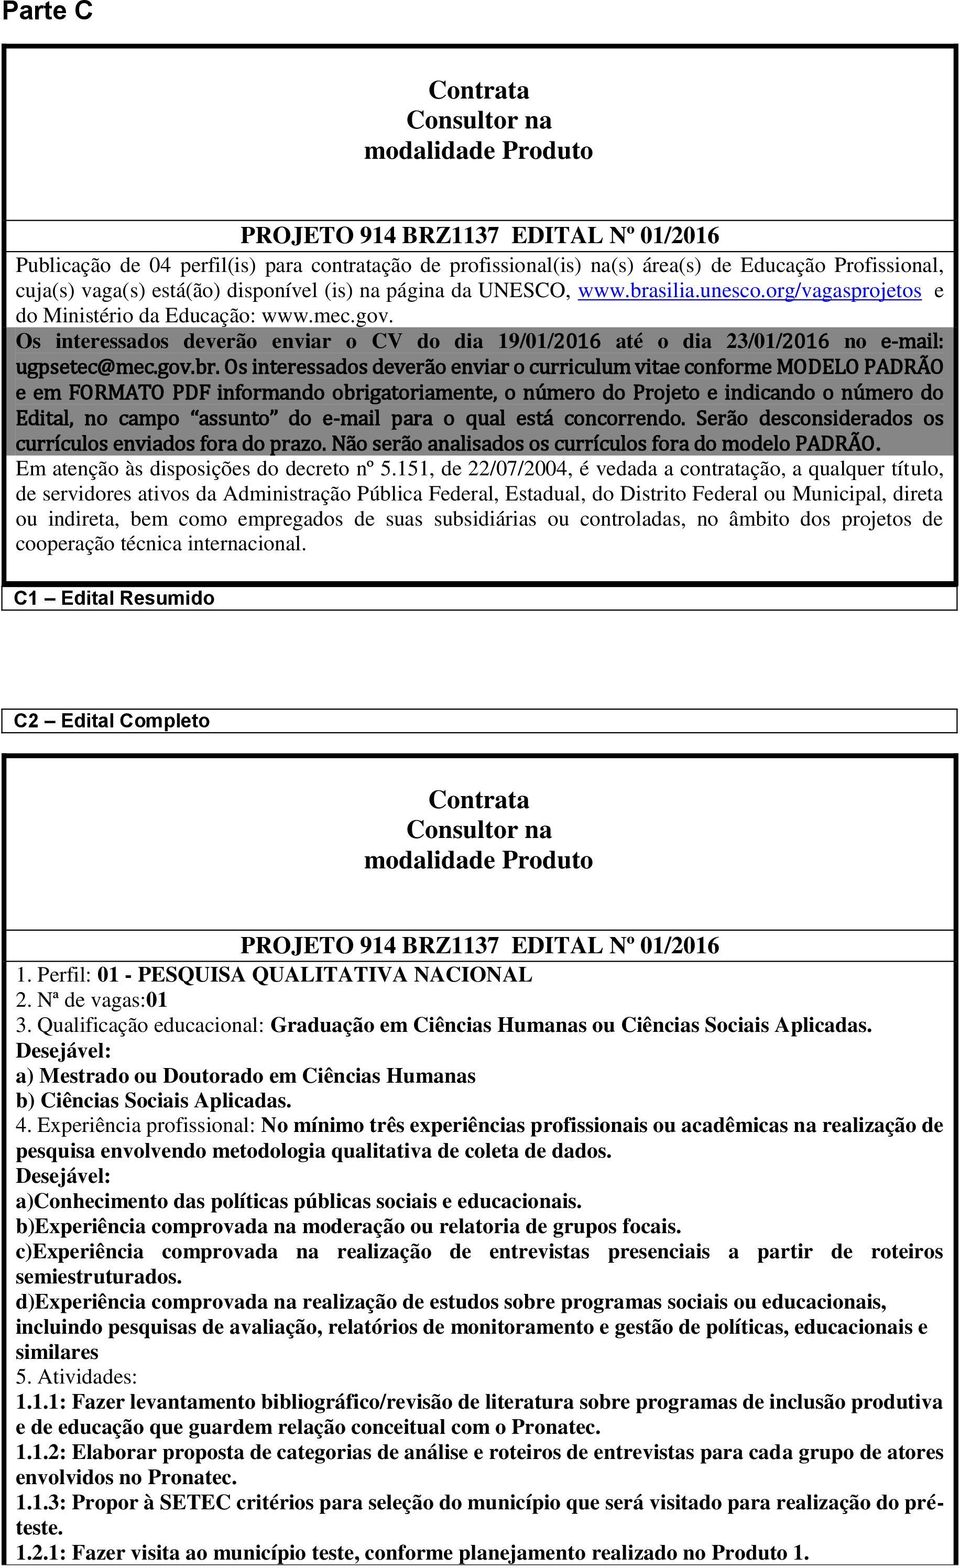 Os interessados deverão enviar o CV do dia 19/01/2016 até o dia 23/01/2016 no e-mail: ugpsetec@mec.gov.br.